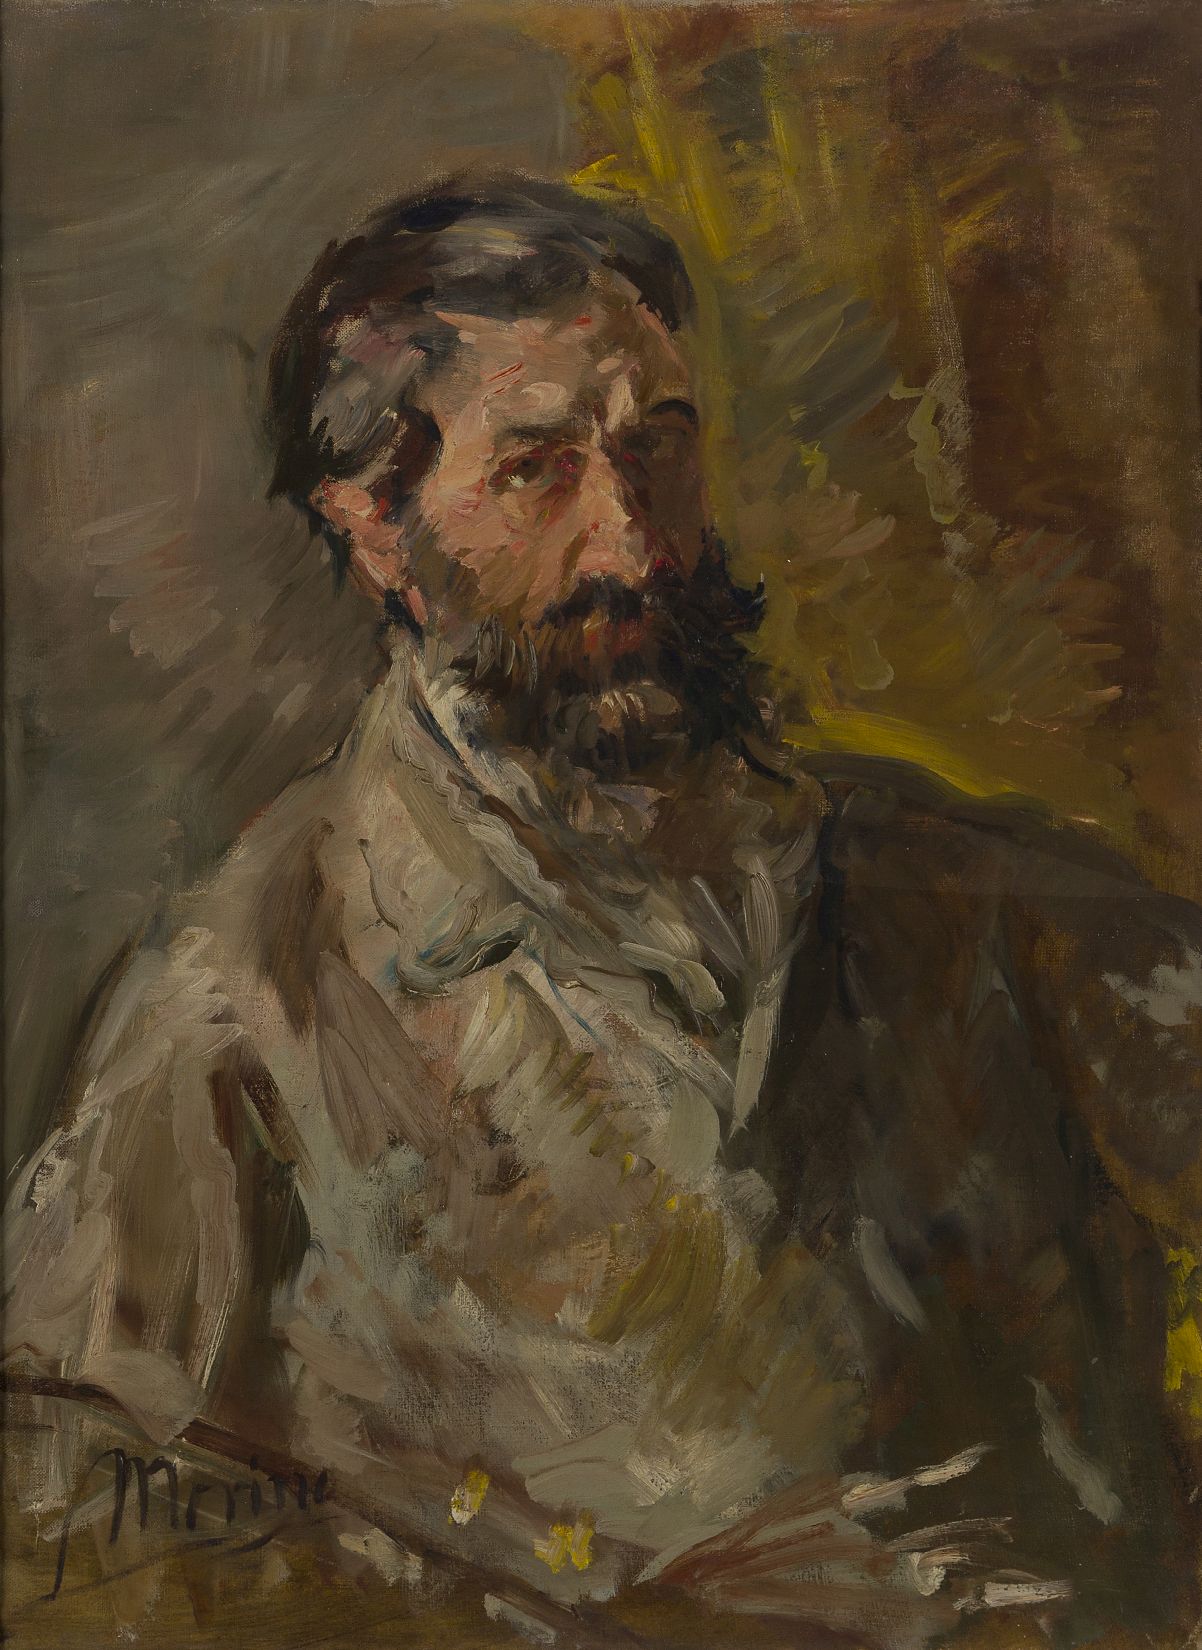 Edmund Pick-Morino, Austrian, 1877-1958- Self portrait; oil on canvas, signed 'Morino' lower left,